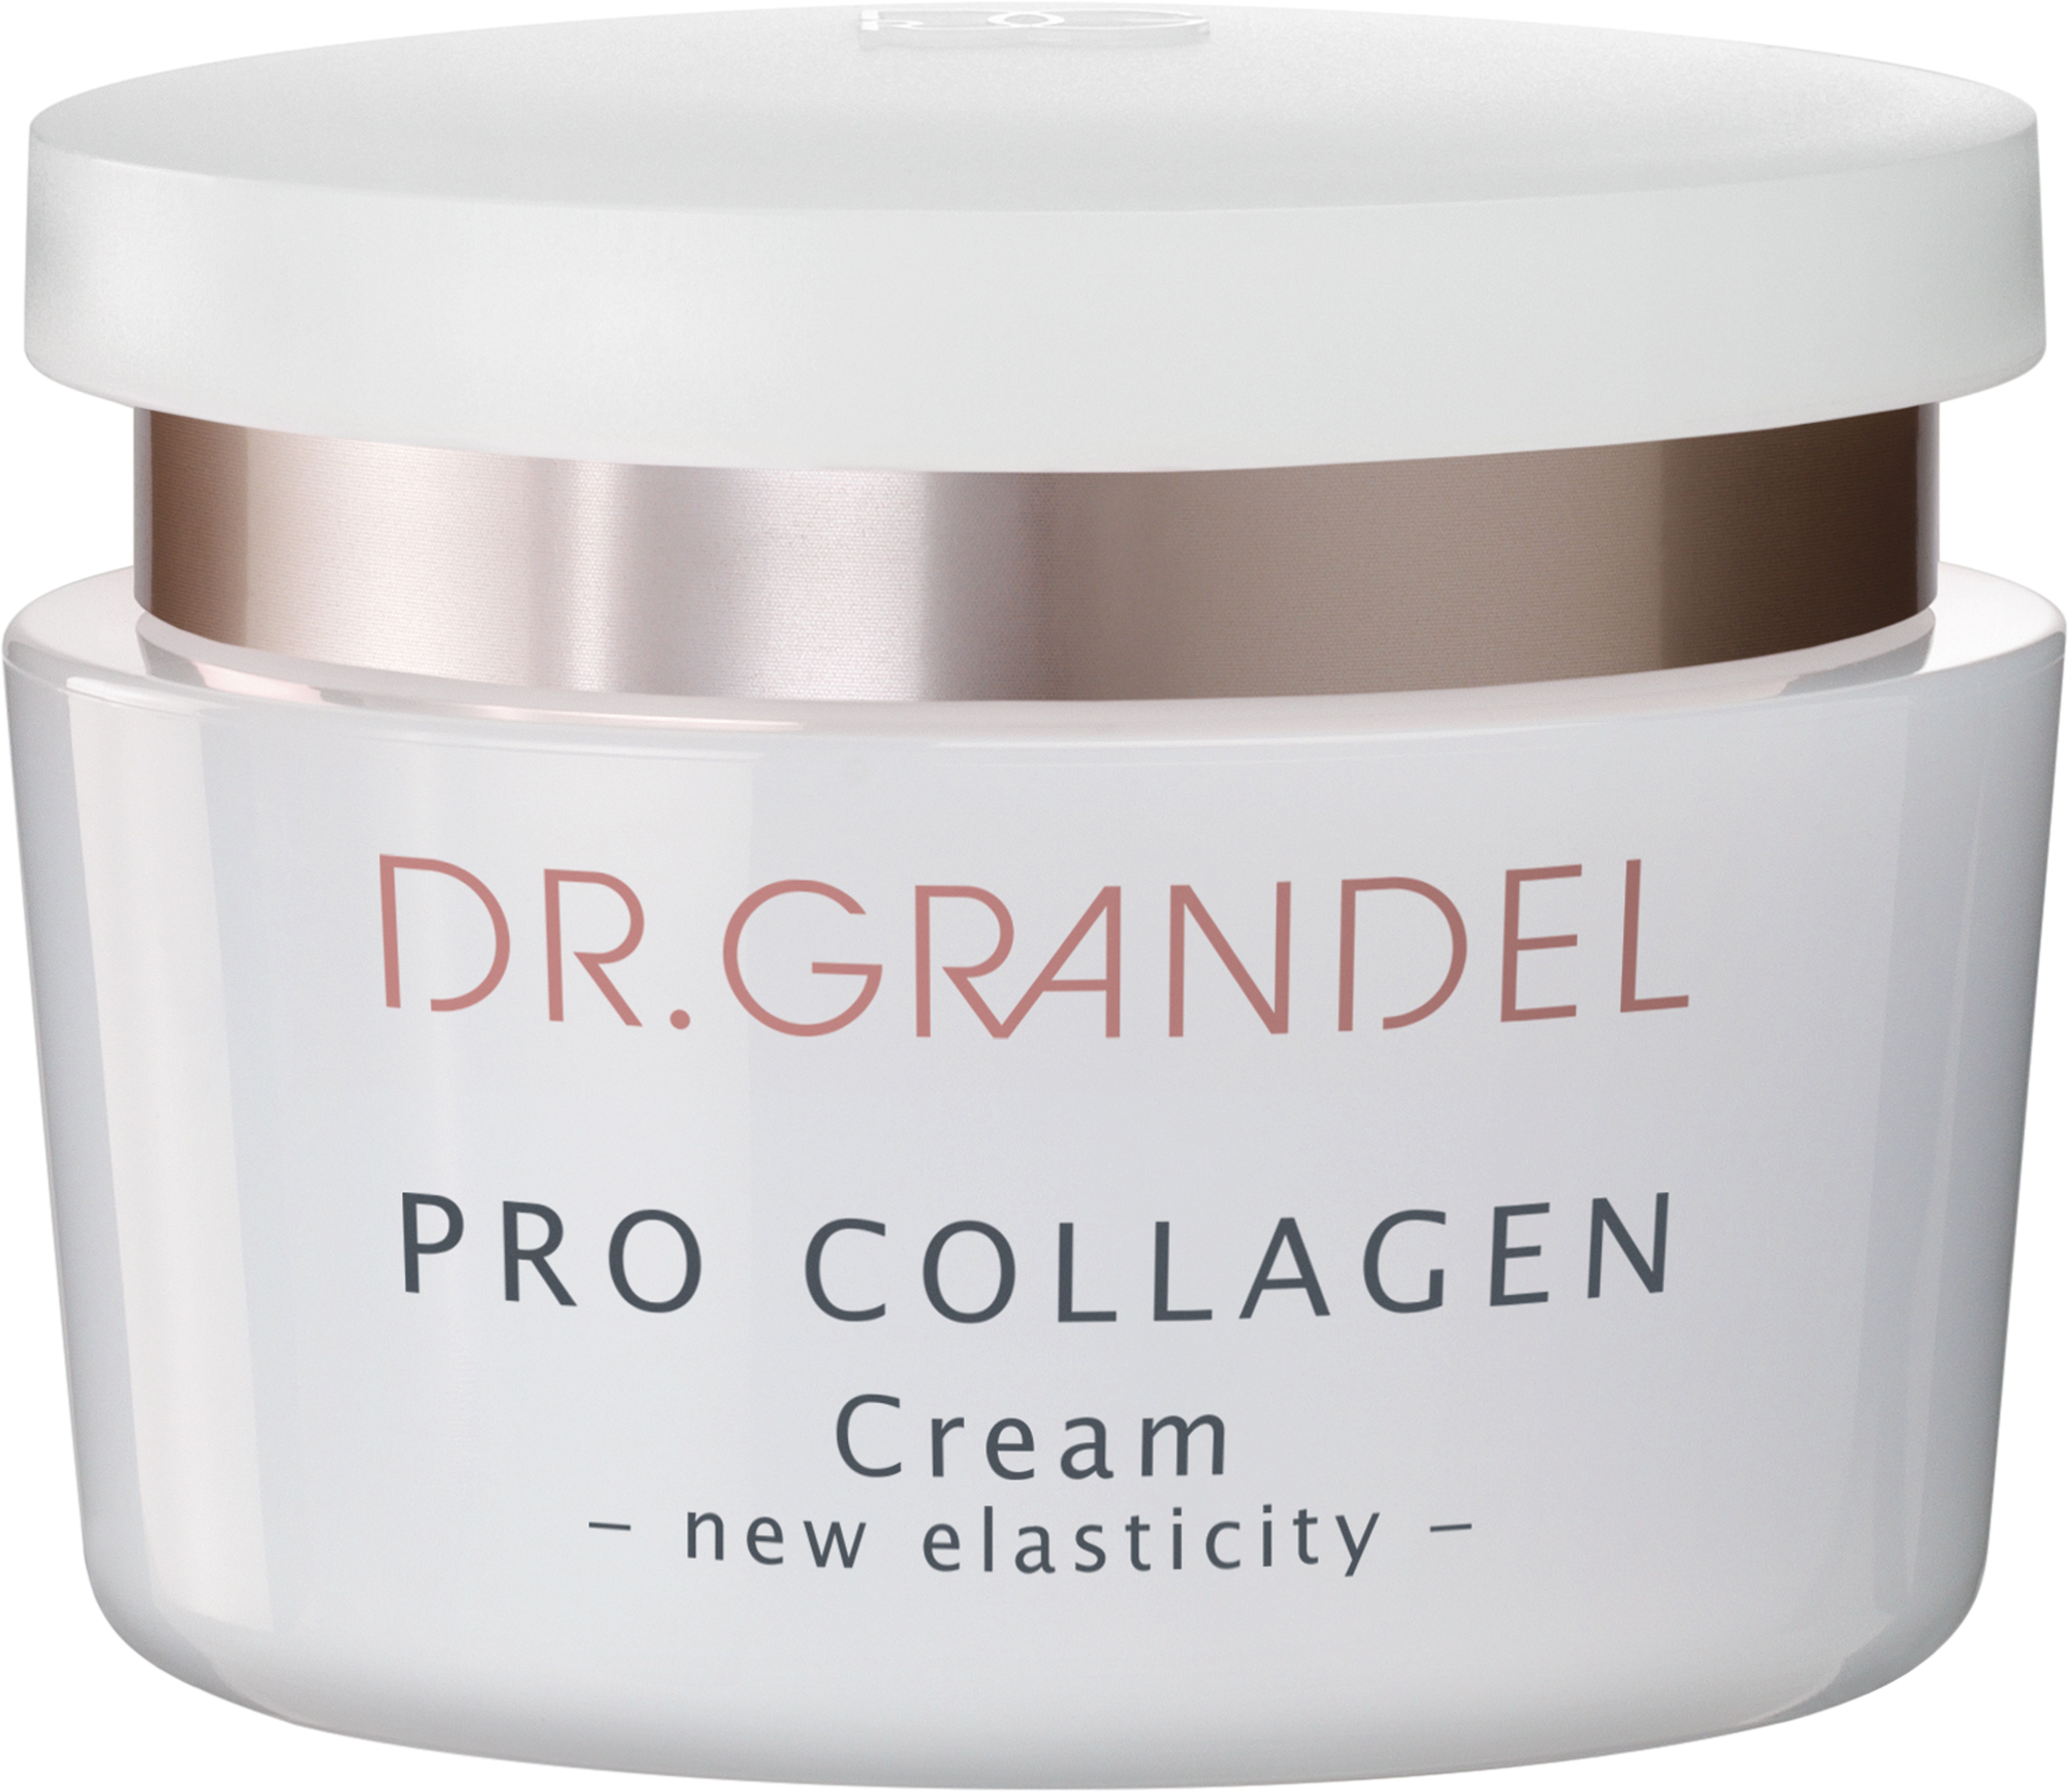 GRANDEL PRO COLLAGEN Cream